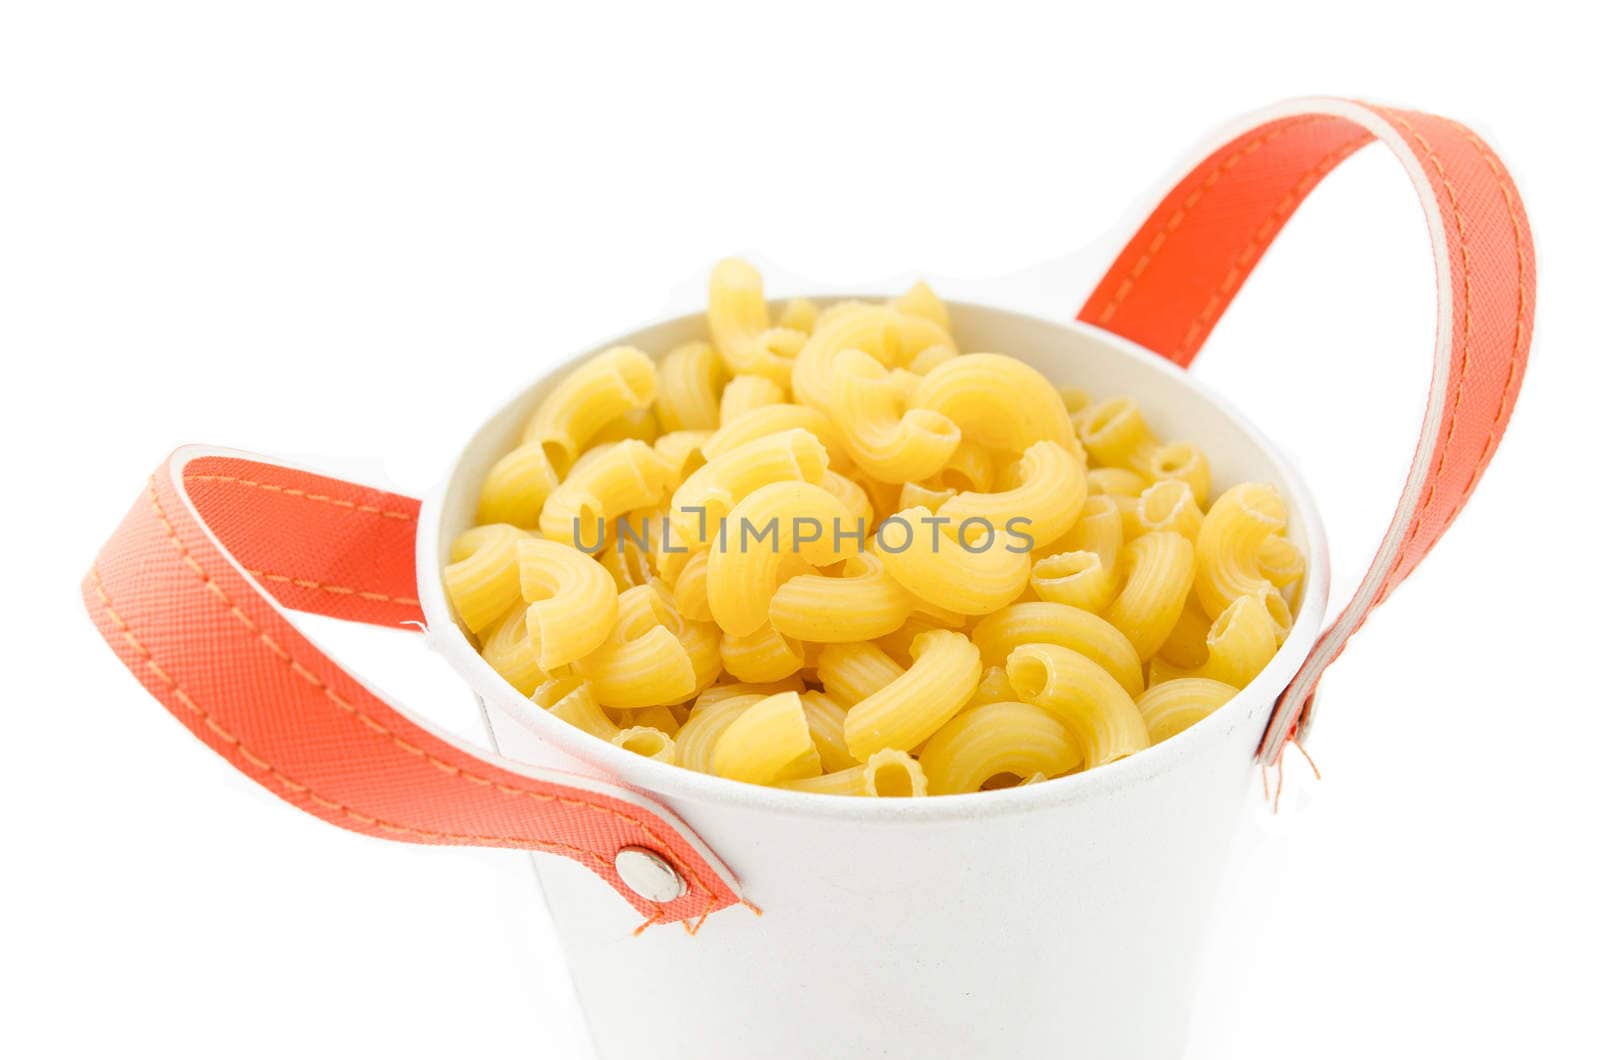 Raw dry elbow macaroni. Italian Pasta raw food in white bowl on white background.